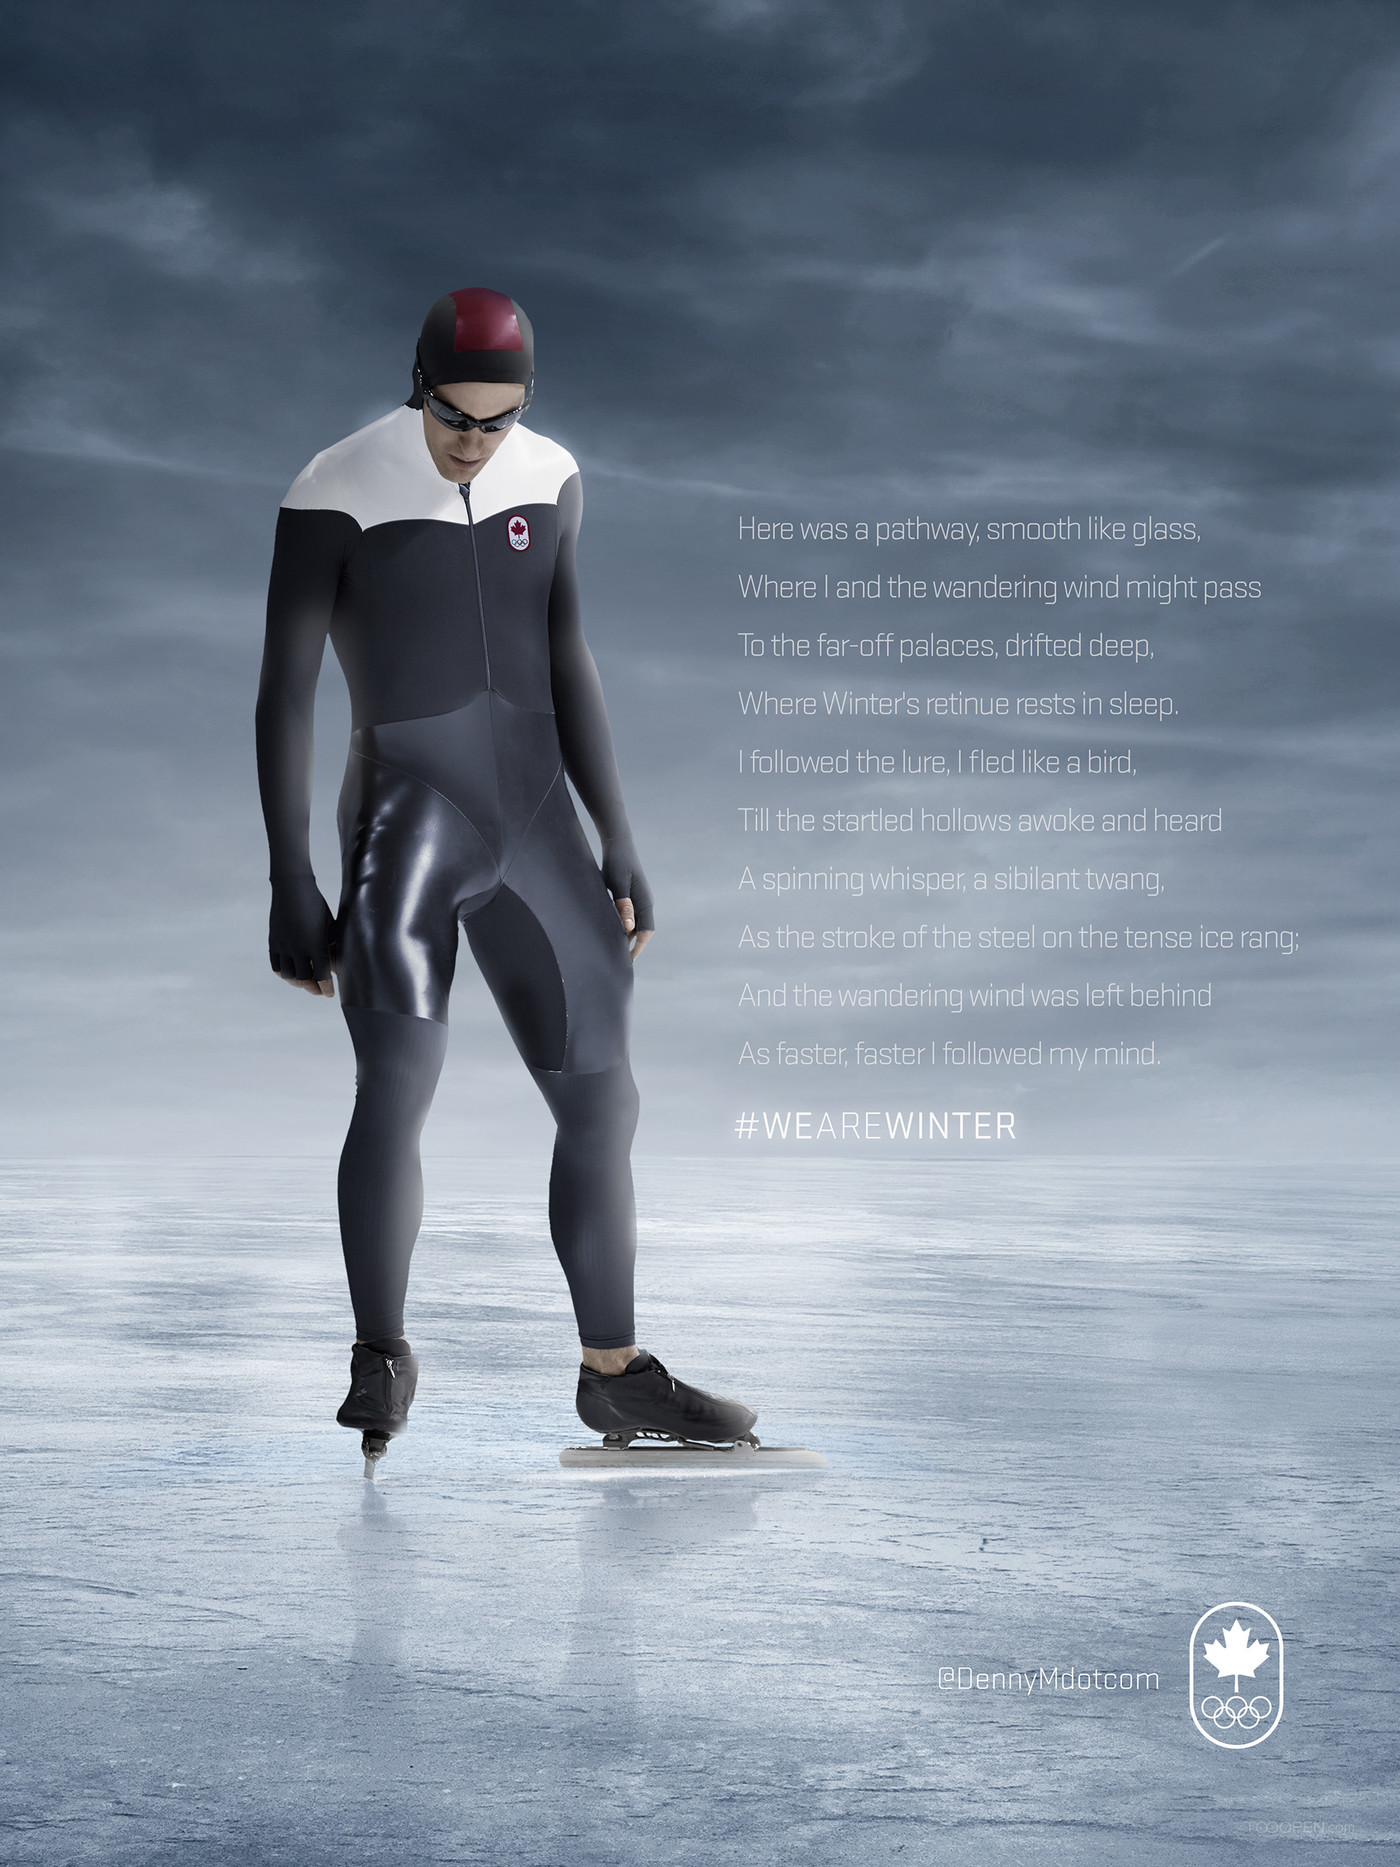 加拿大奥林匹克委员会平面广告设计欣赏-06